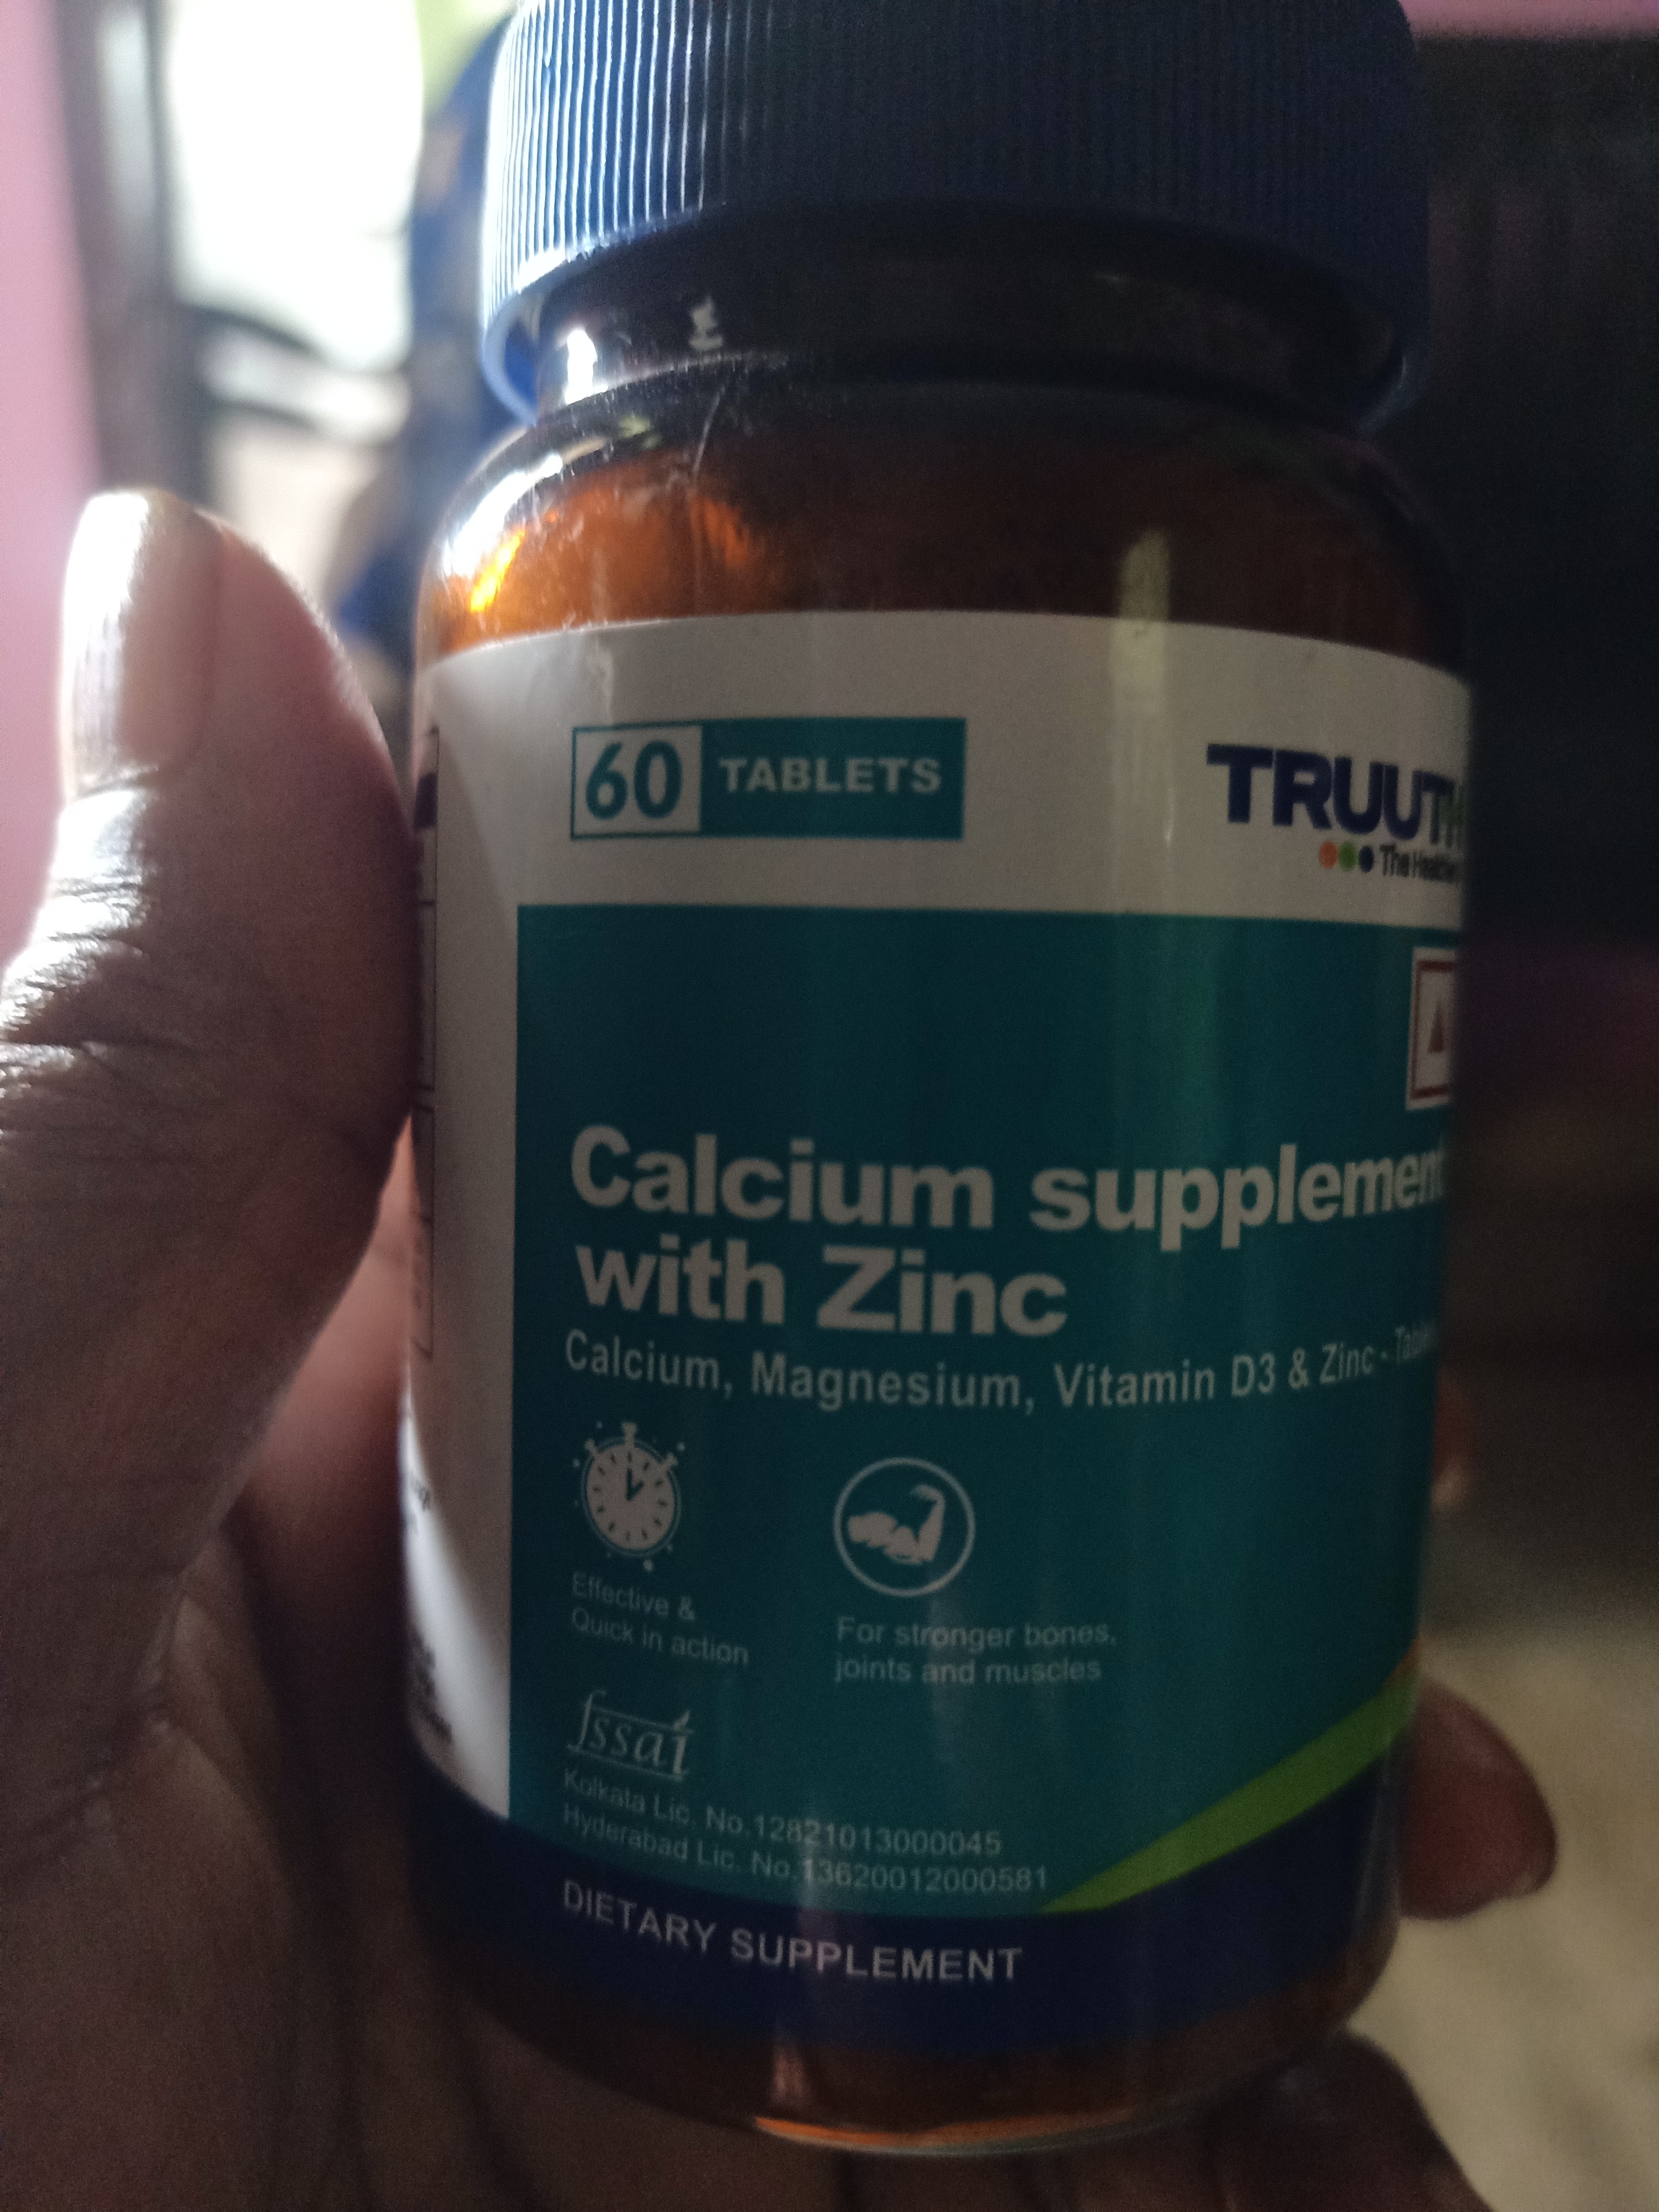 Truuth Calcium, Magnesium, Vitamin D3 & Zinc Tablet 60's